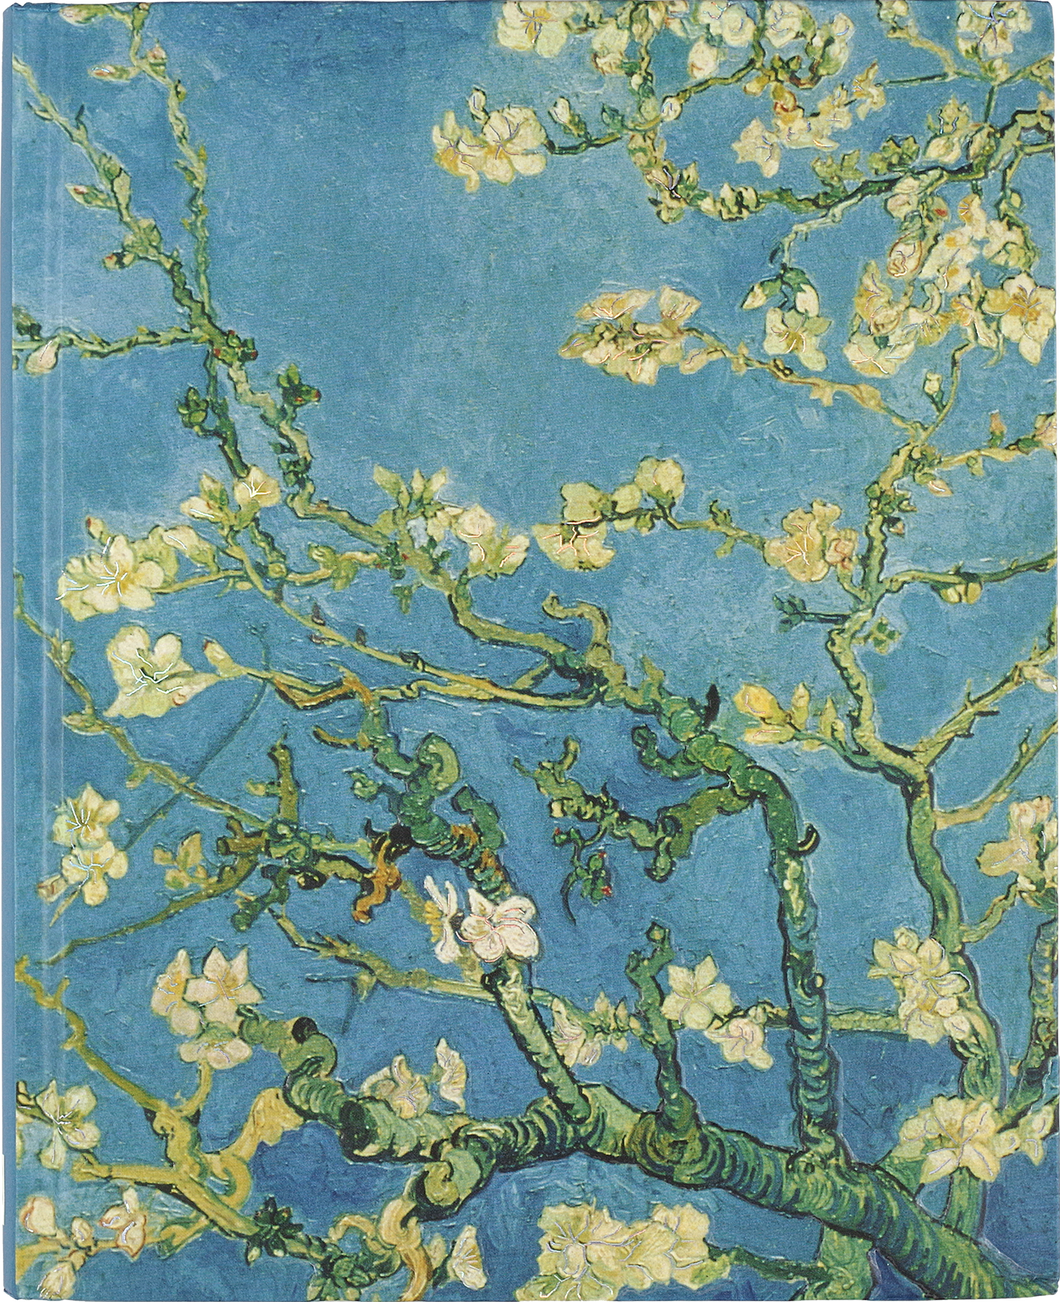 Peter Pauper Press Almond Blossom Journal